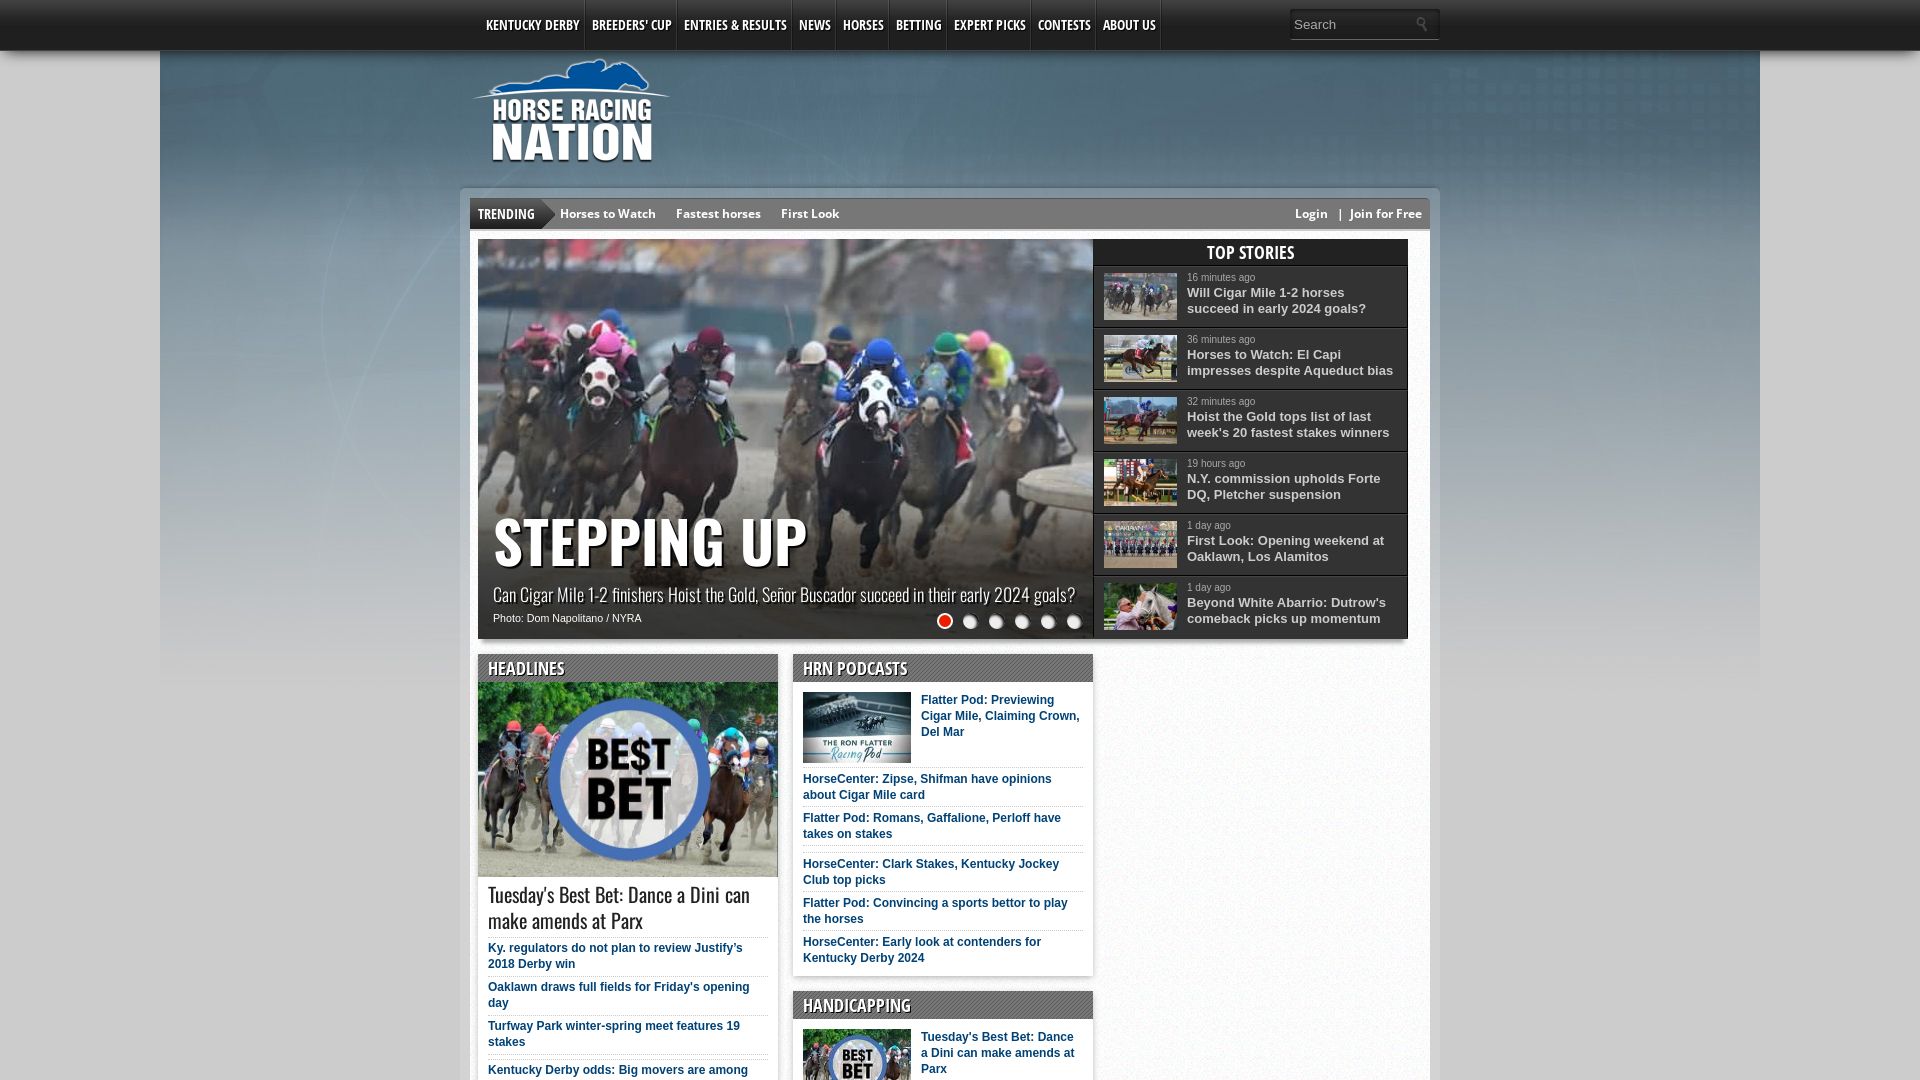 Website status horseracingnation.com is   ONLINE